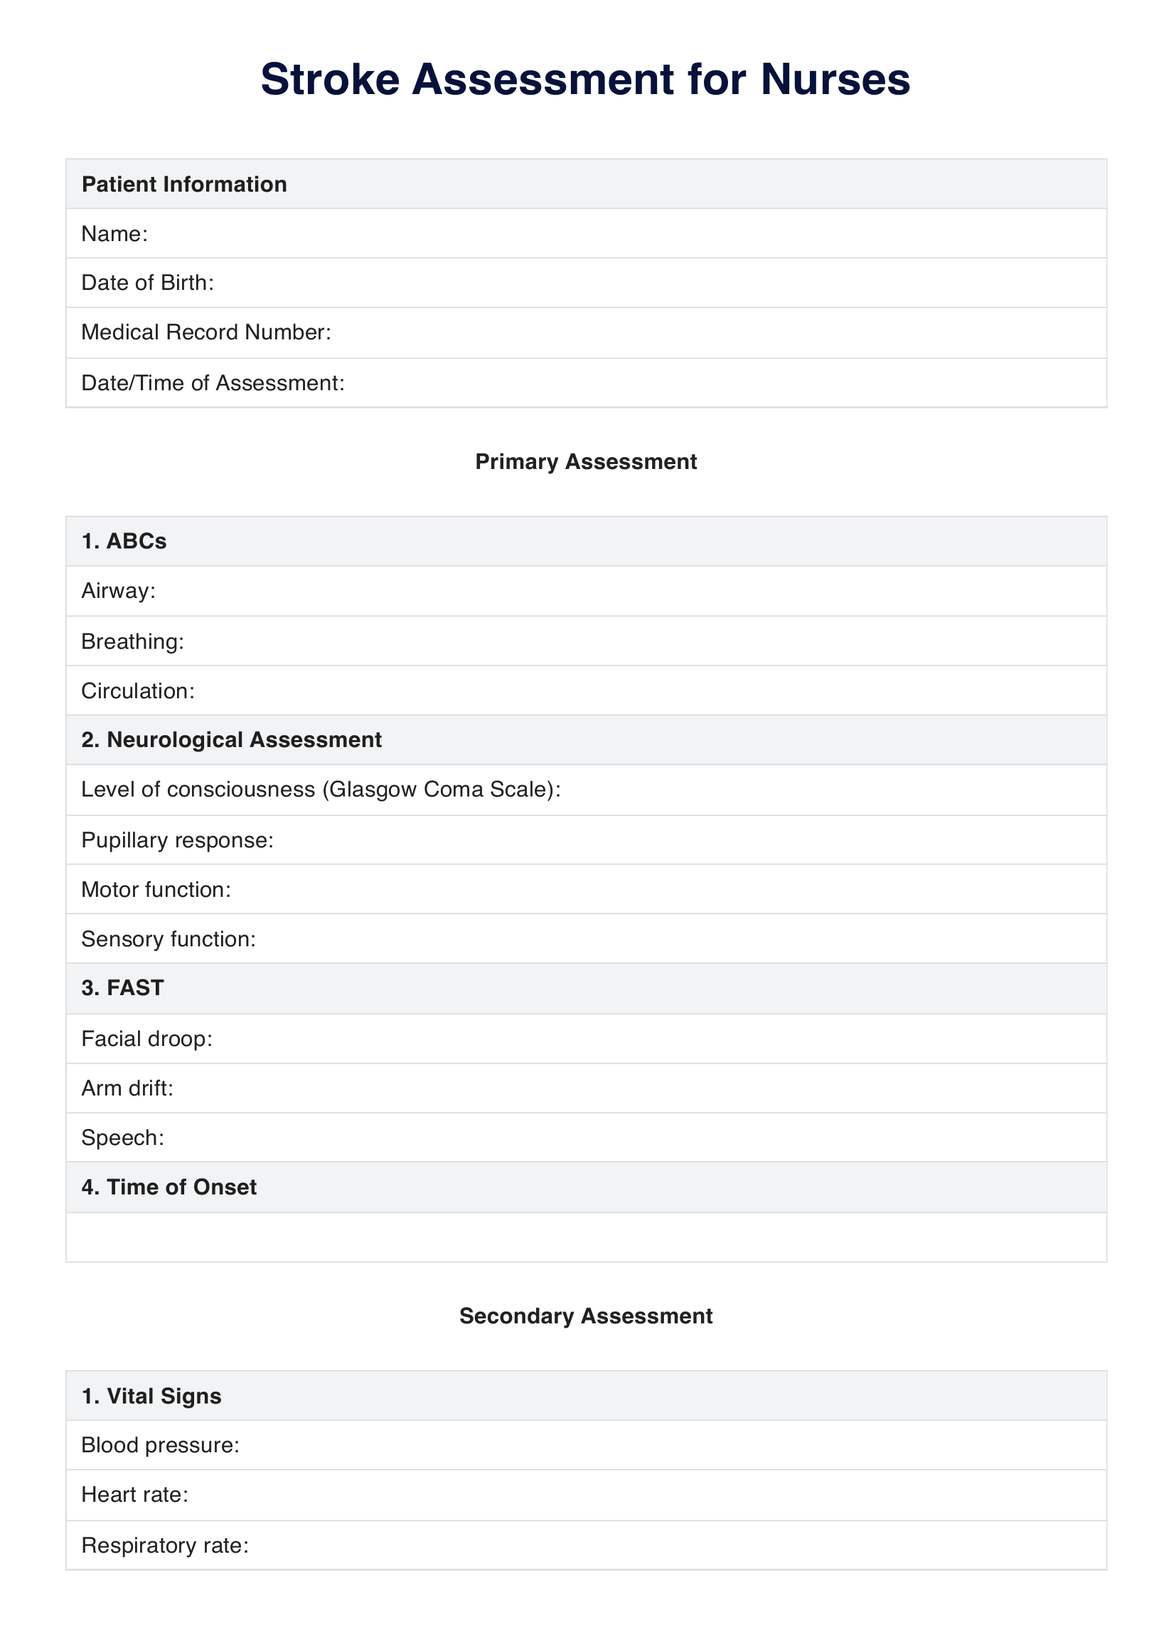 Stroke Assessment for Nurses PDF Example